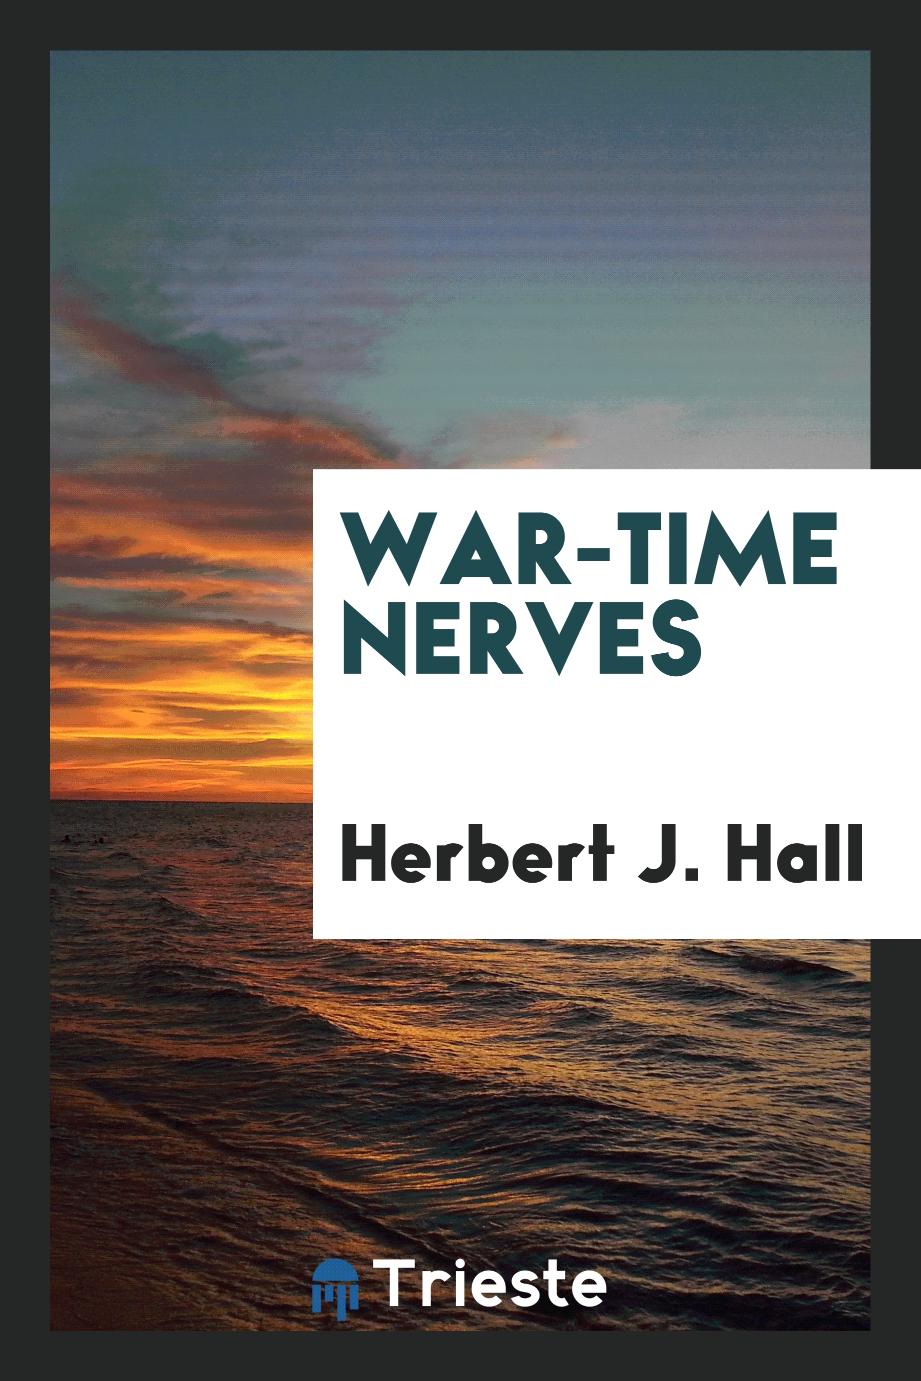 War-time nerves